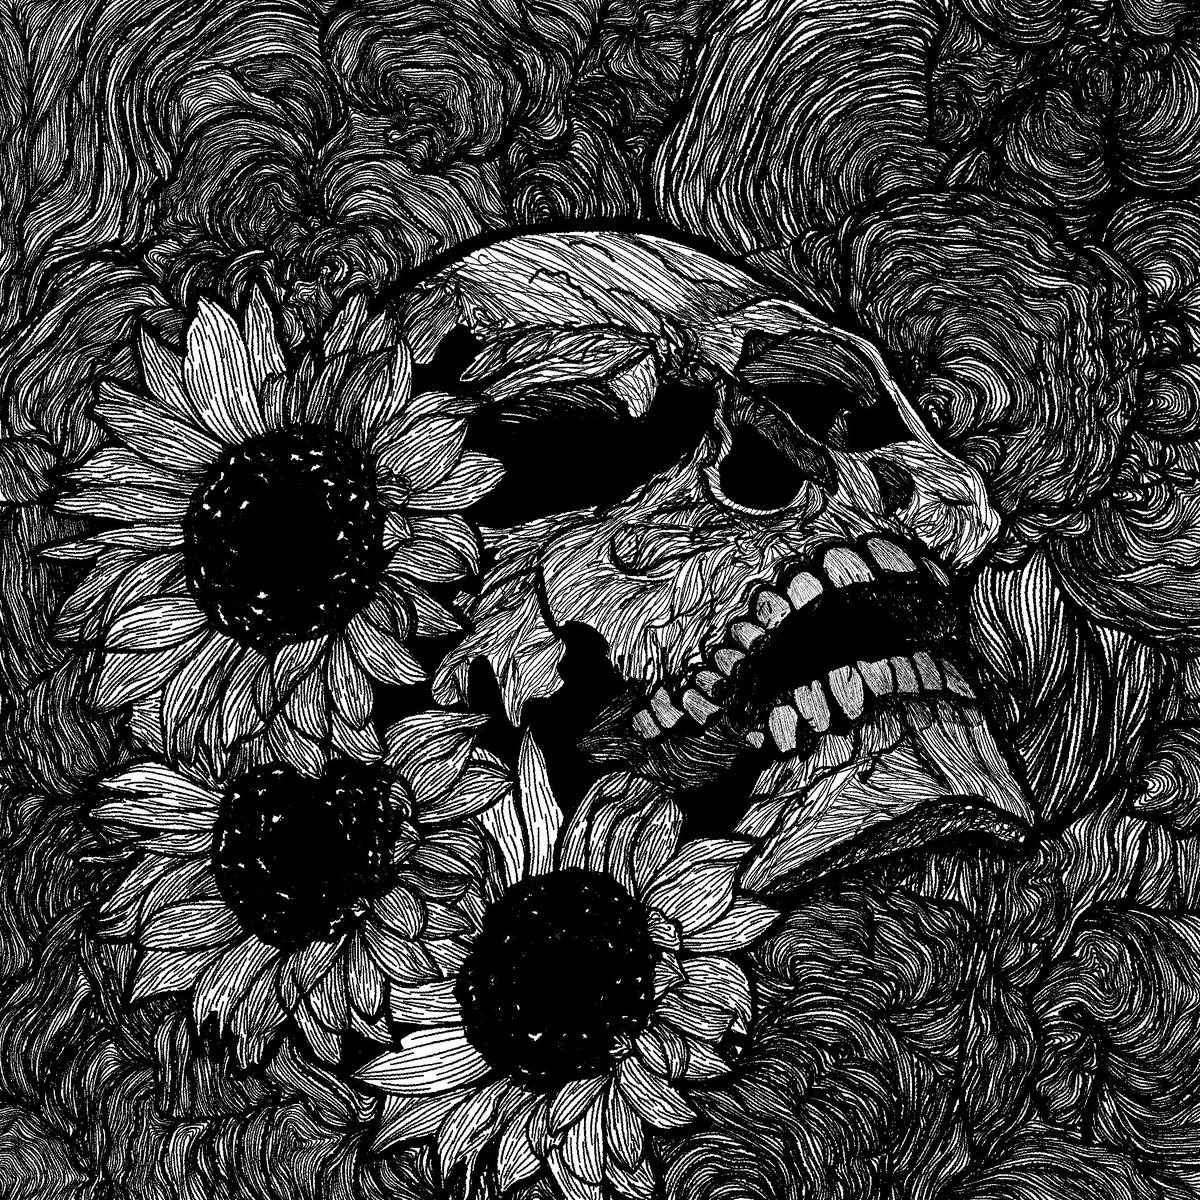 Hell flowers 🔥

°
#DarkArt #Illustration #DarkArtCircle #Drawing #DigitalPainting #DigitalArt #BlackMetalArt #LineArt #ArtistOnTwitter #BlackAndWhite